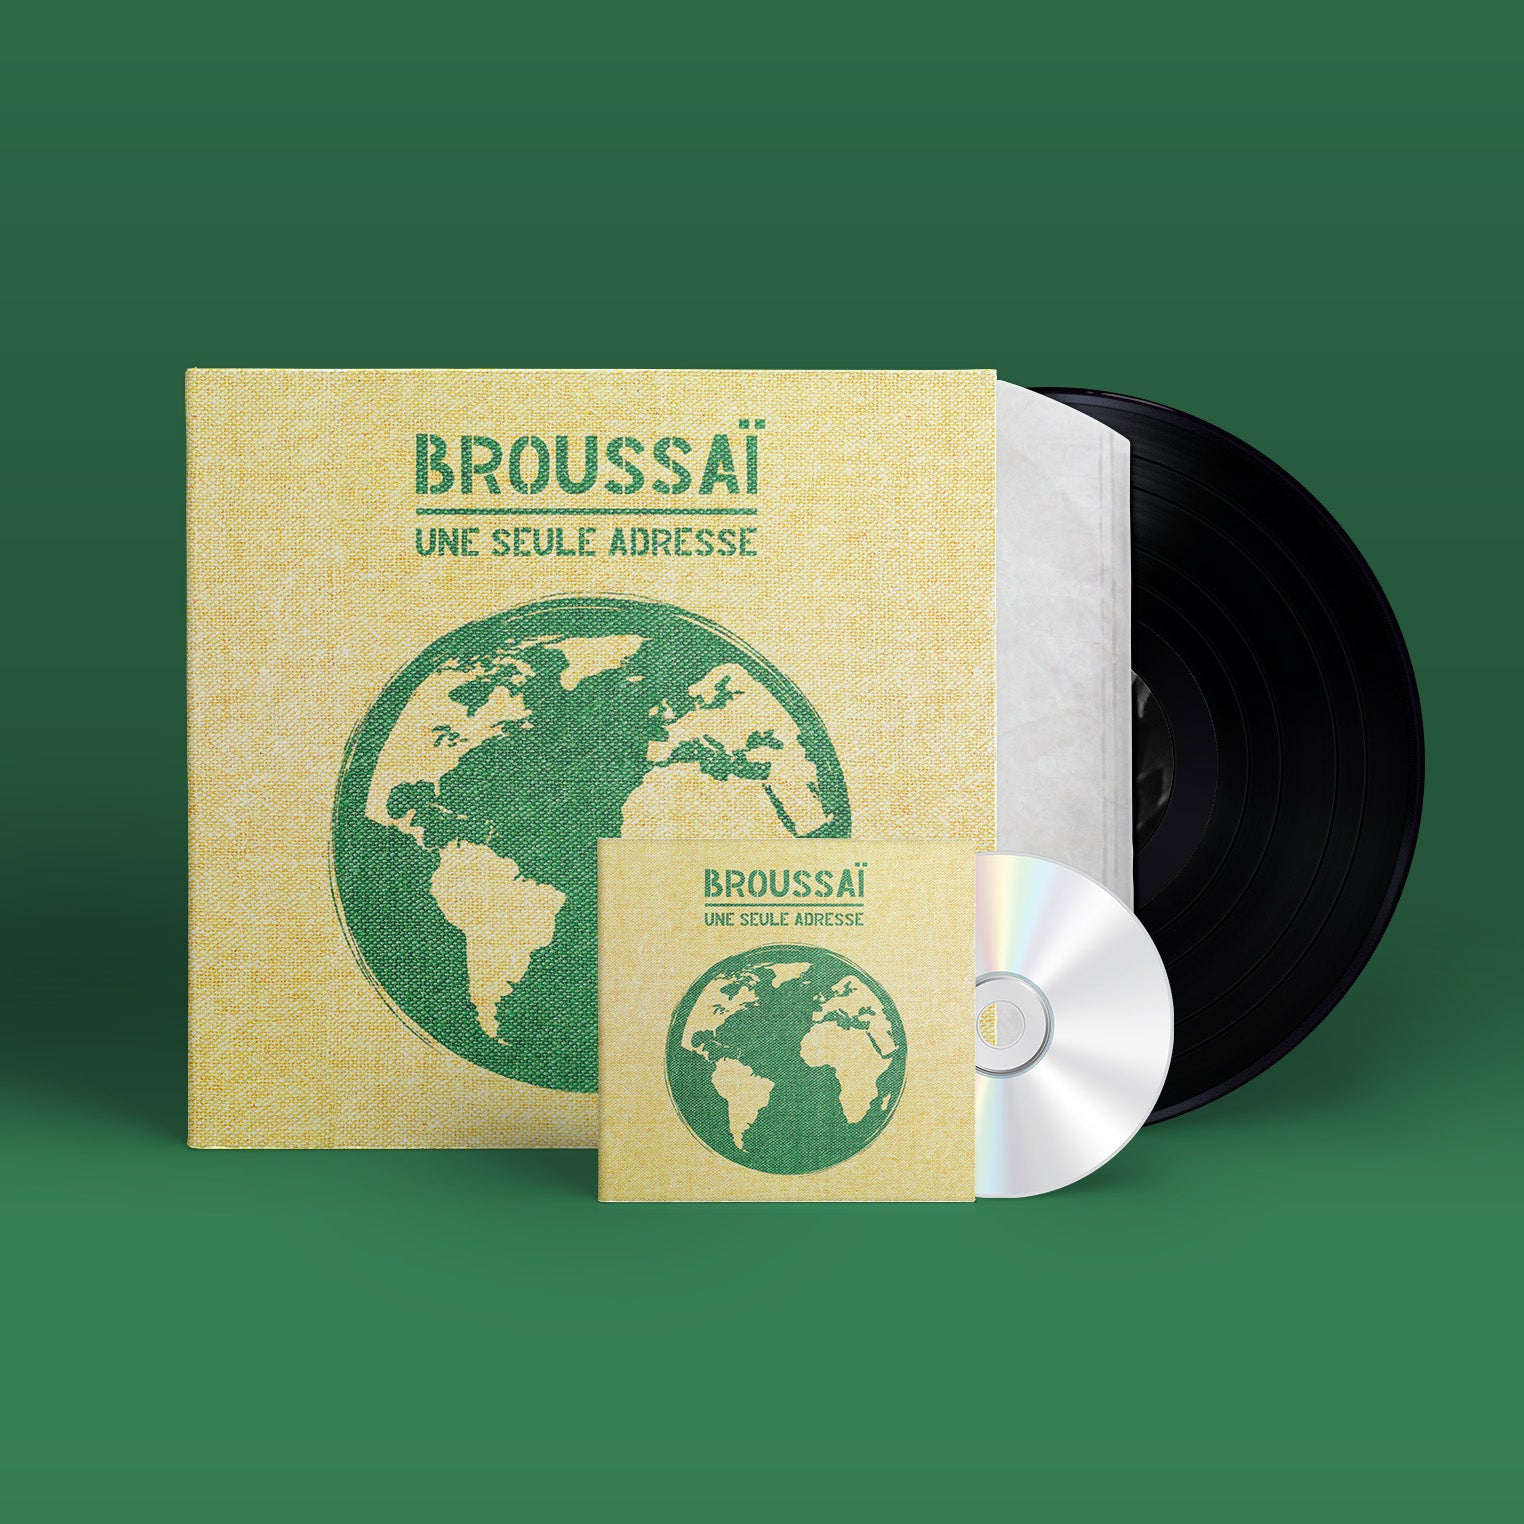 Broussaï - Une seule adresse